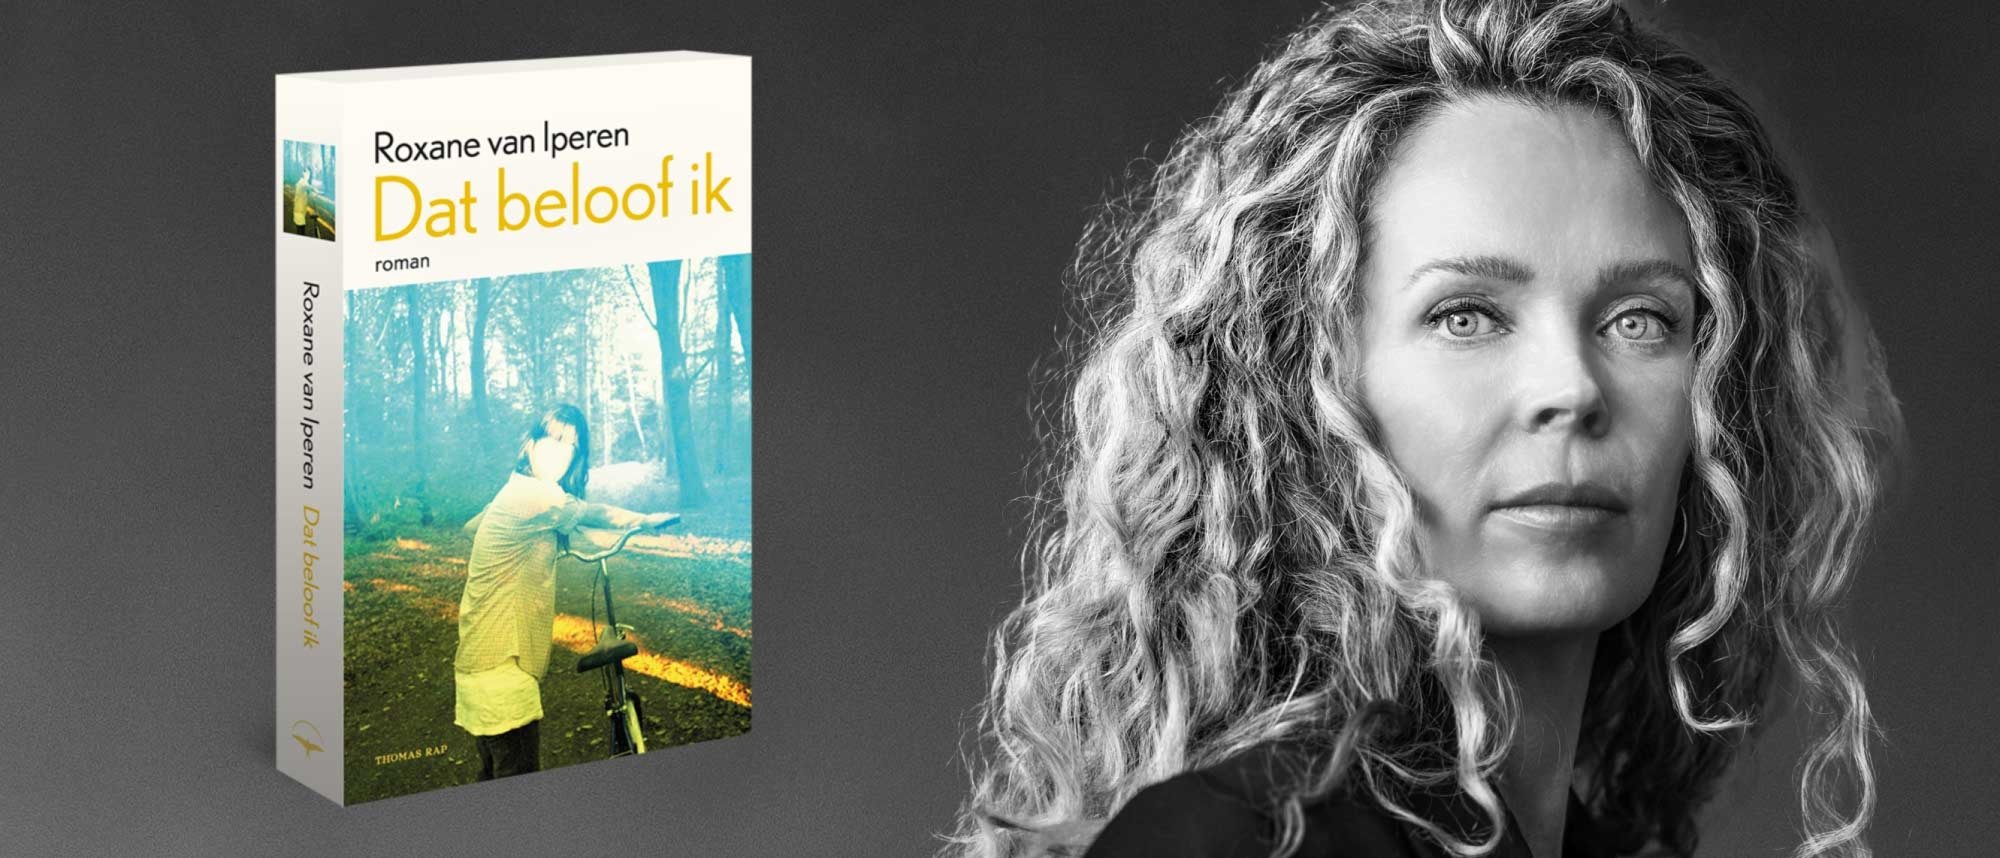 Roxane van Iperen wordt geïnterviewd over haar nieuwe roman Dat beloof ik